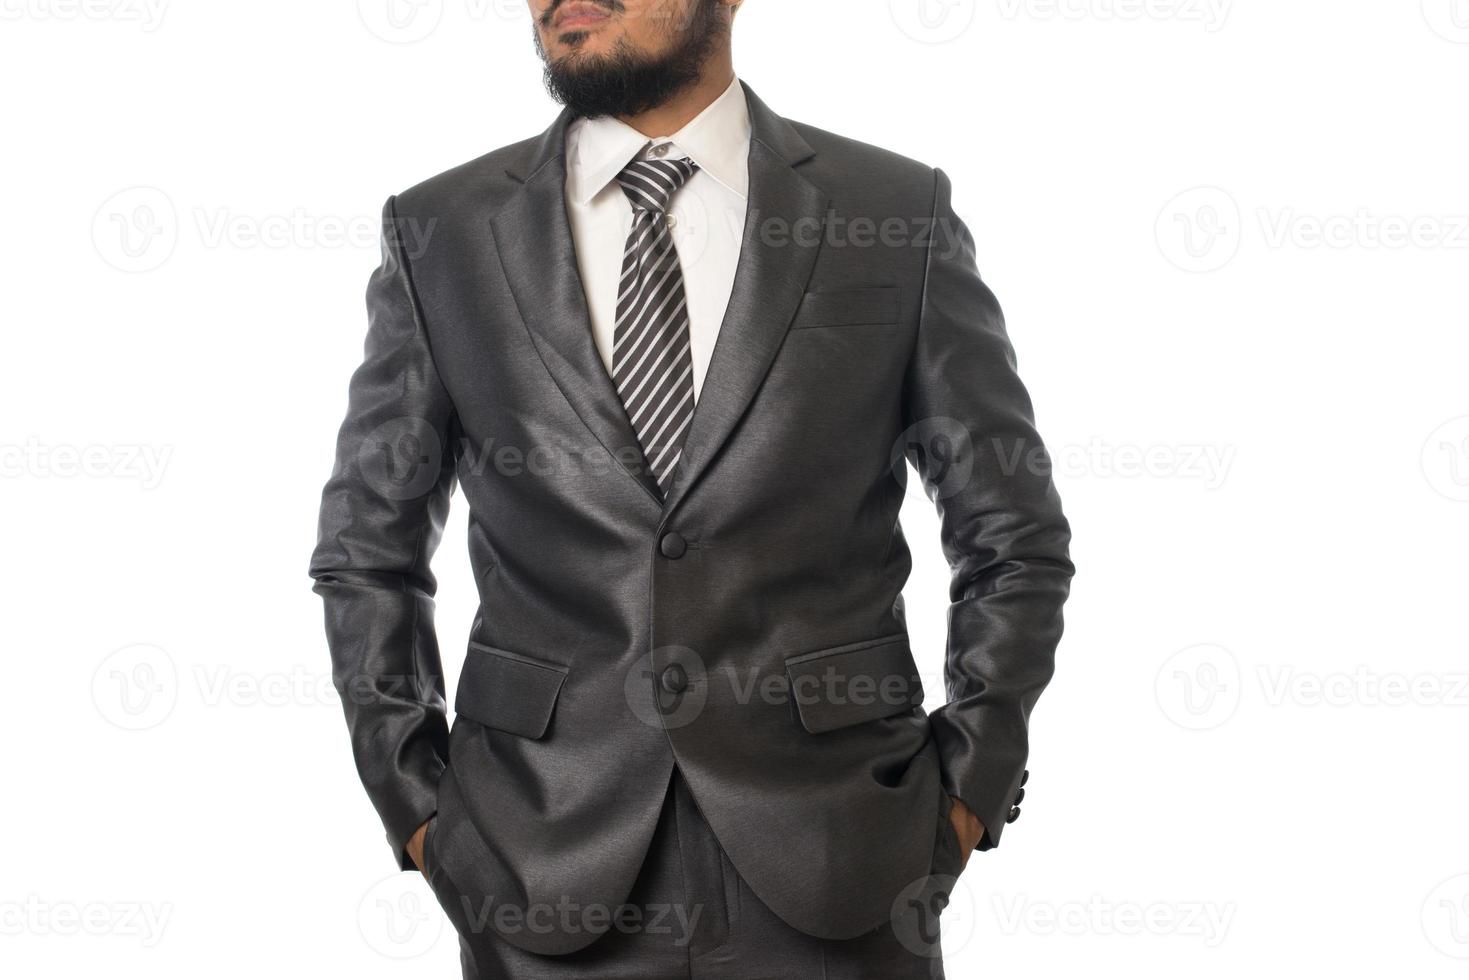 jovem empresário confiante em terno isolado no fundo branco foto